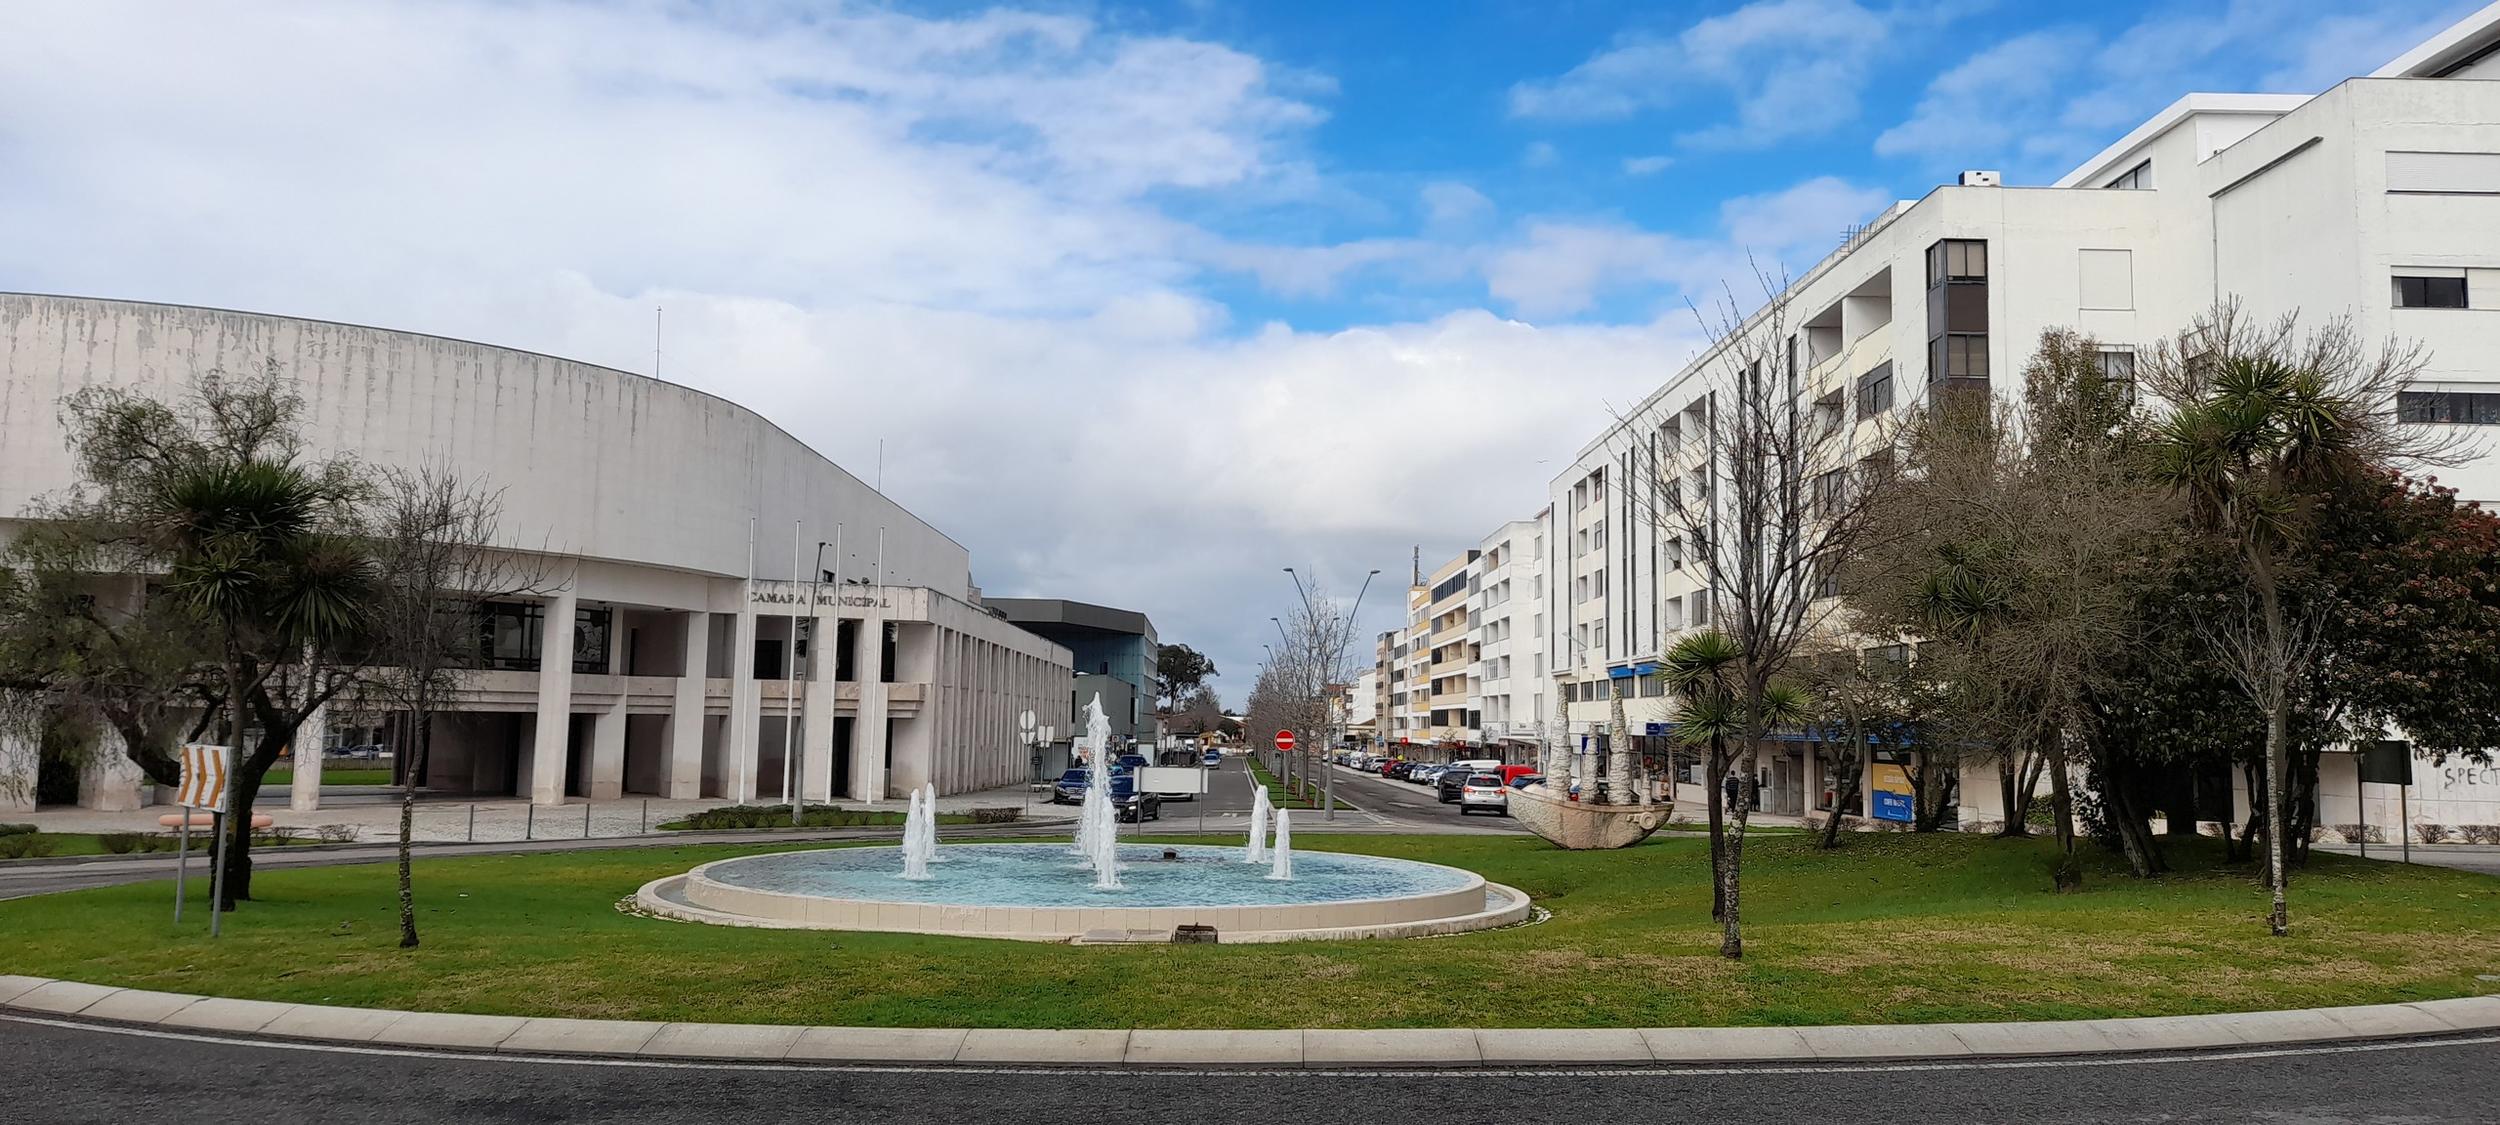 Câmara Municipal apresenta saldo de gerência de 2020 no valor de 2,8 milhões de euros